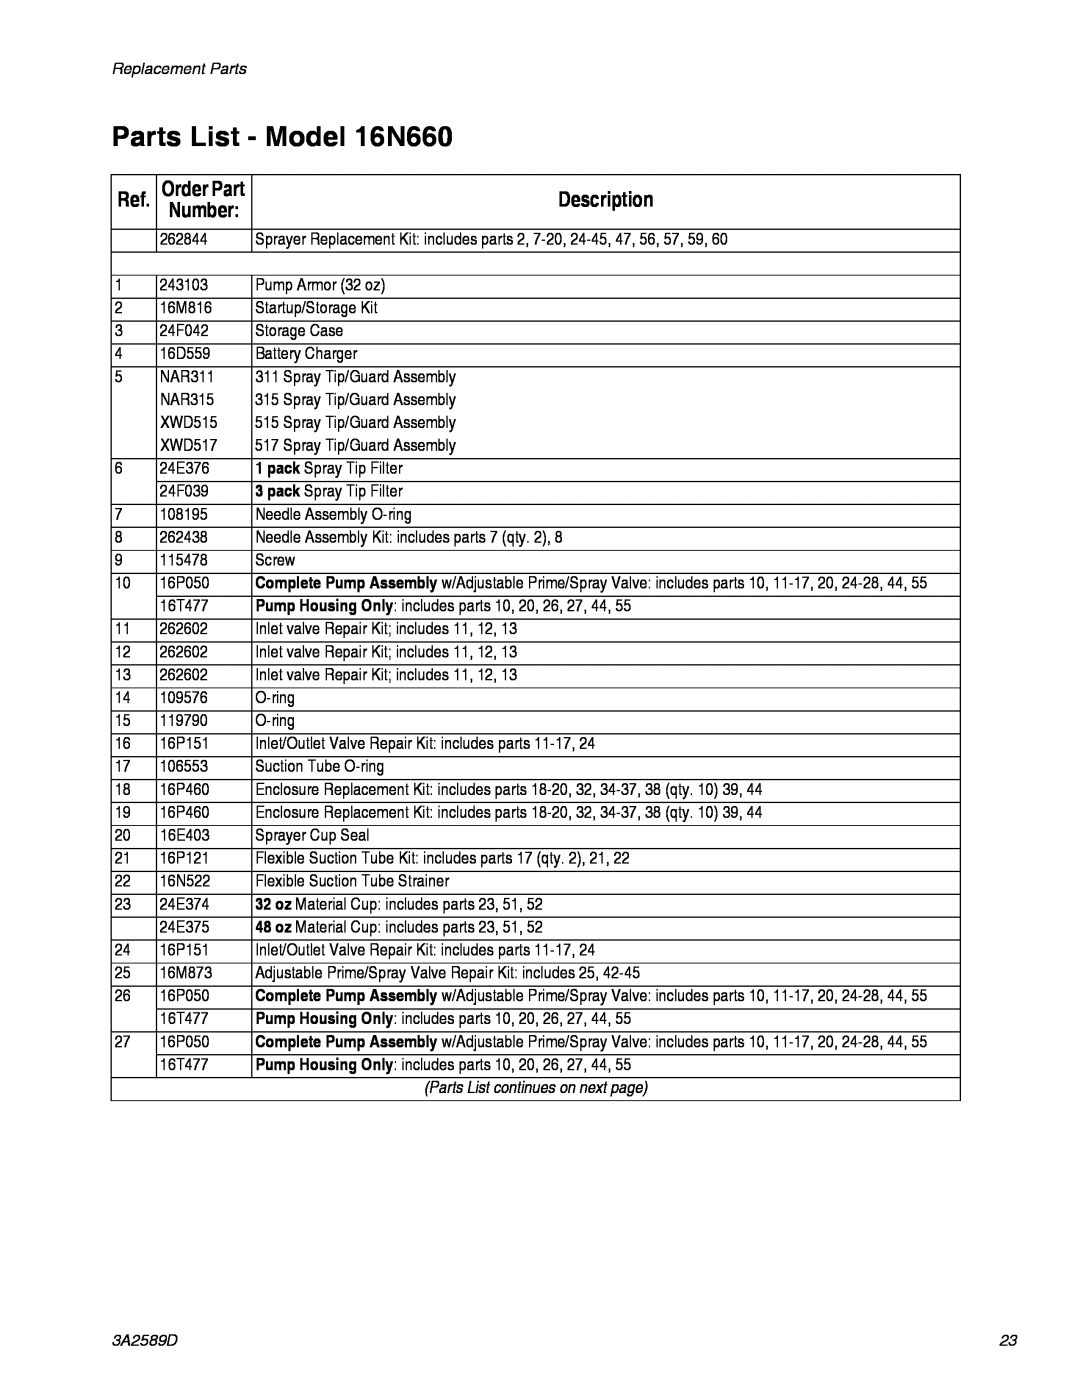 Graco 3A2589D Parts List - Model 16N660, Parts List continues on next page, Description, Number, Order Part 